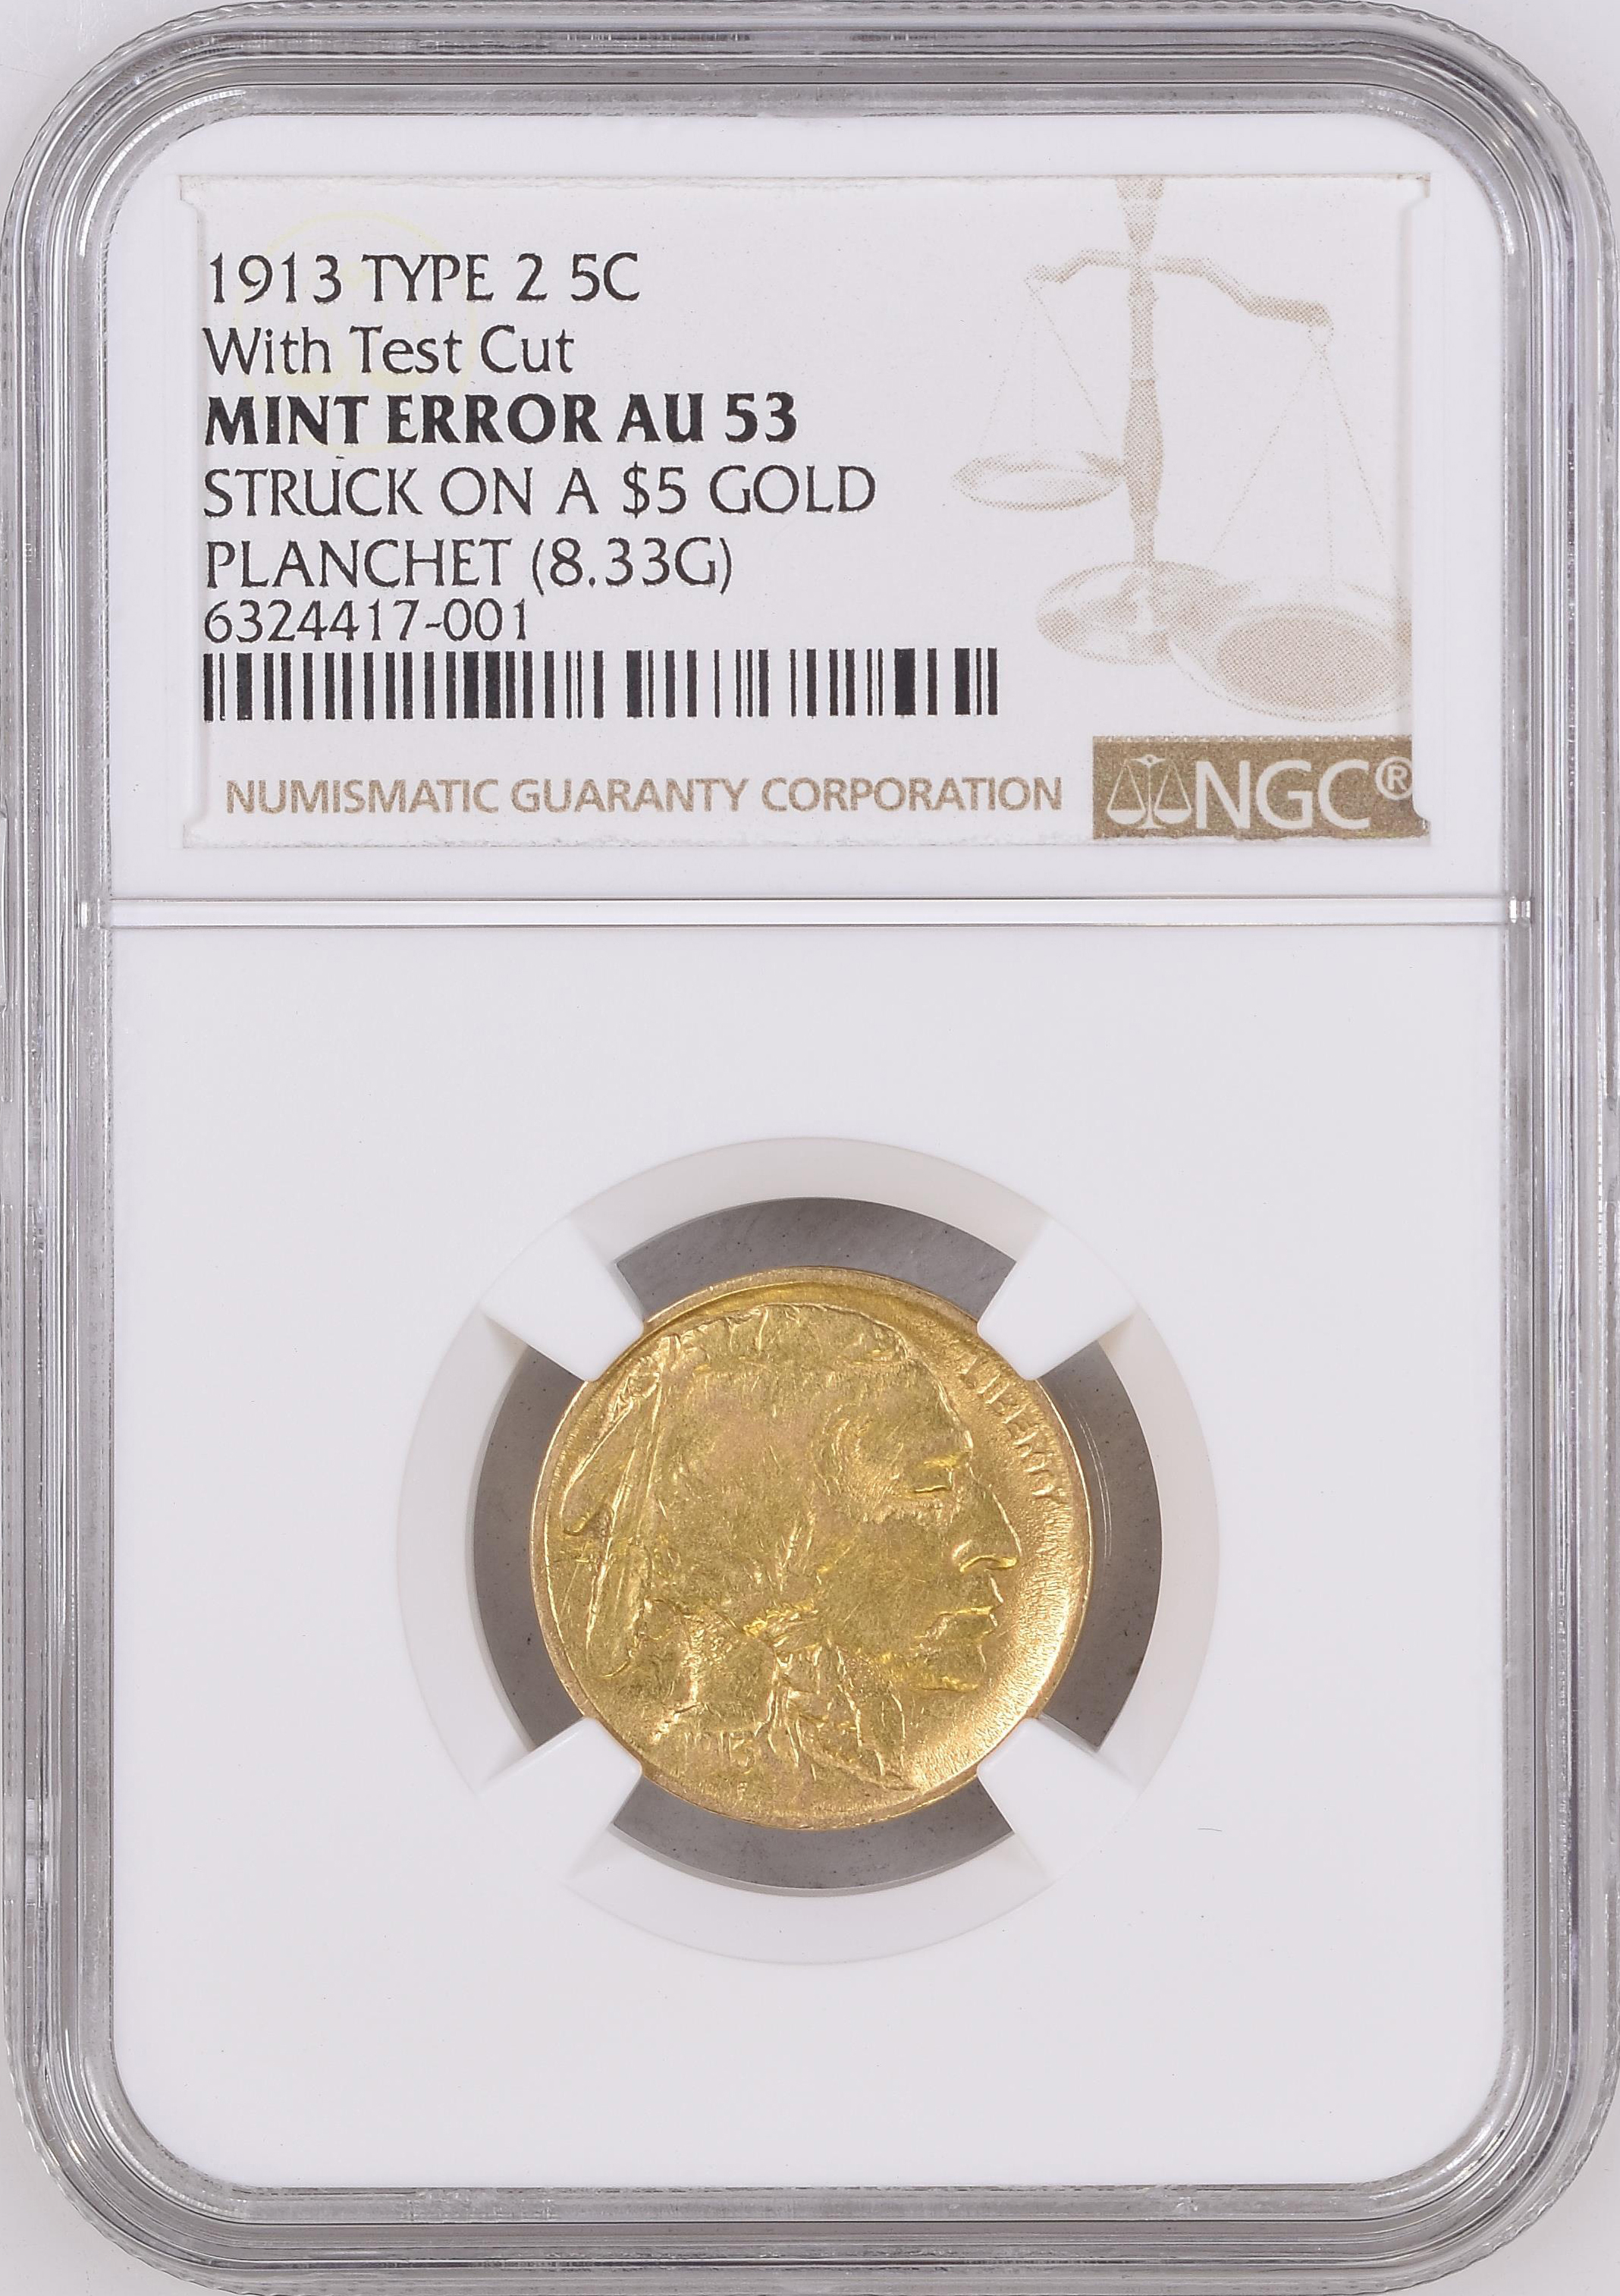 Buffalo Nickels  Golden Eagle Coins